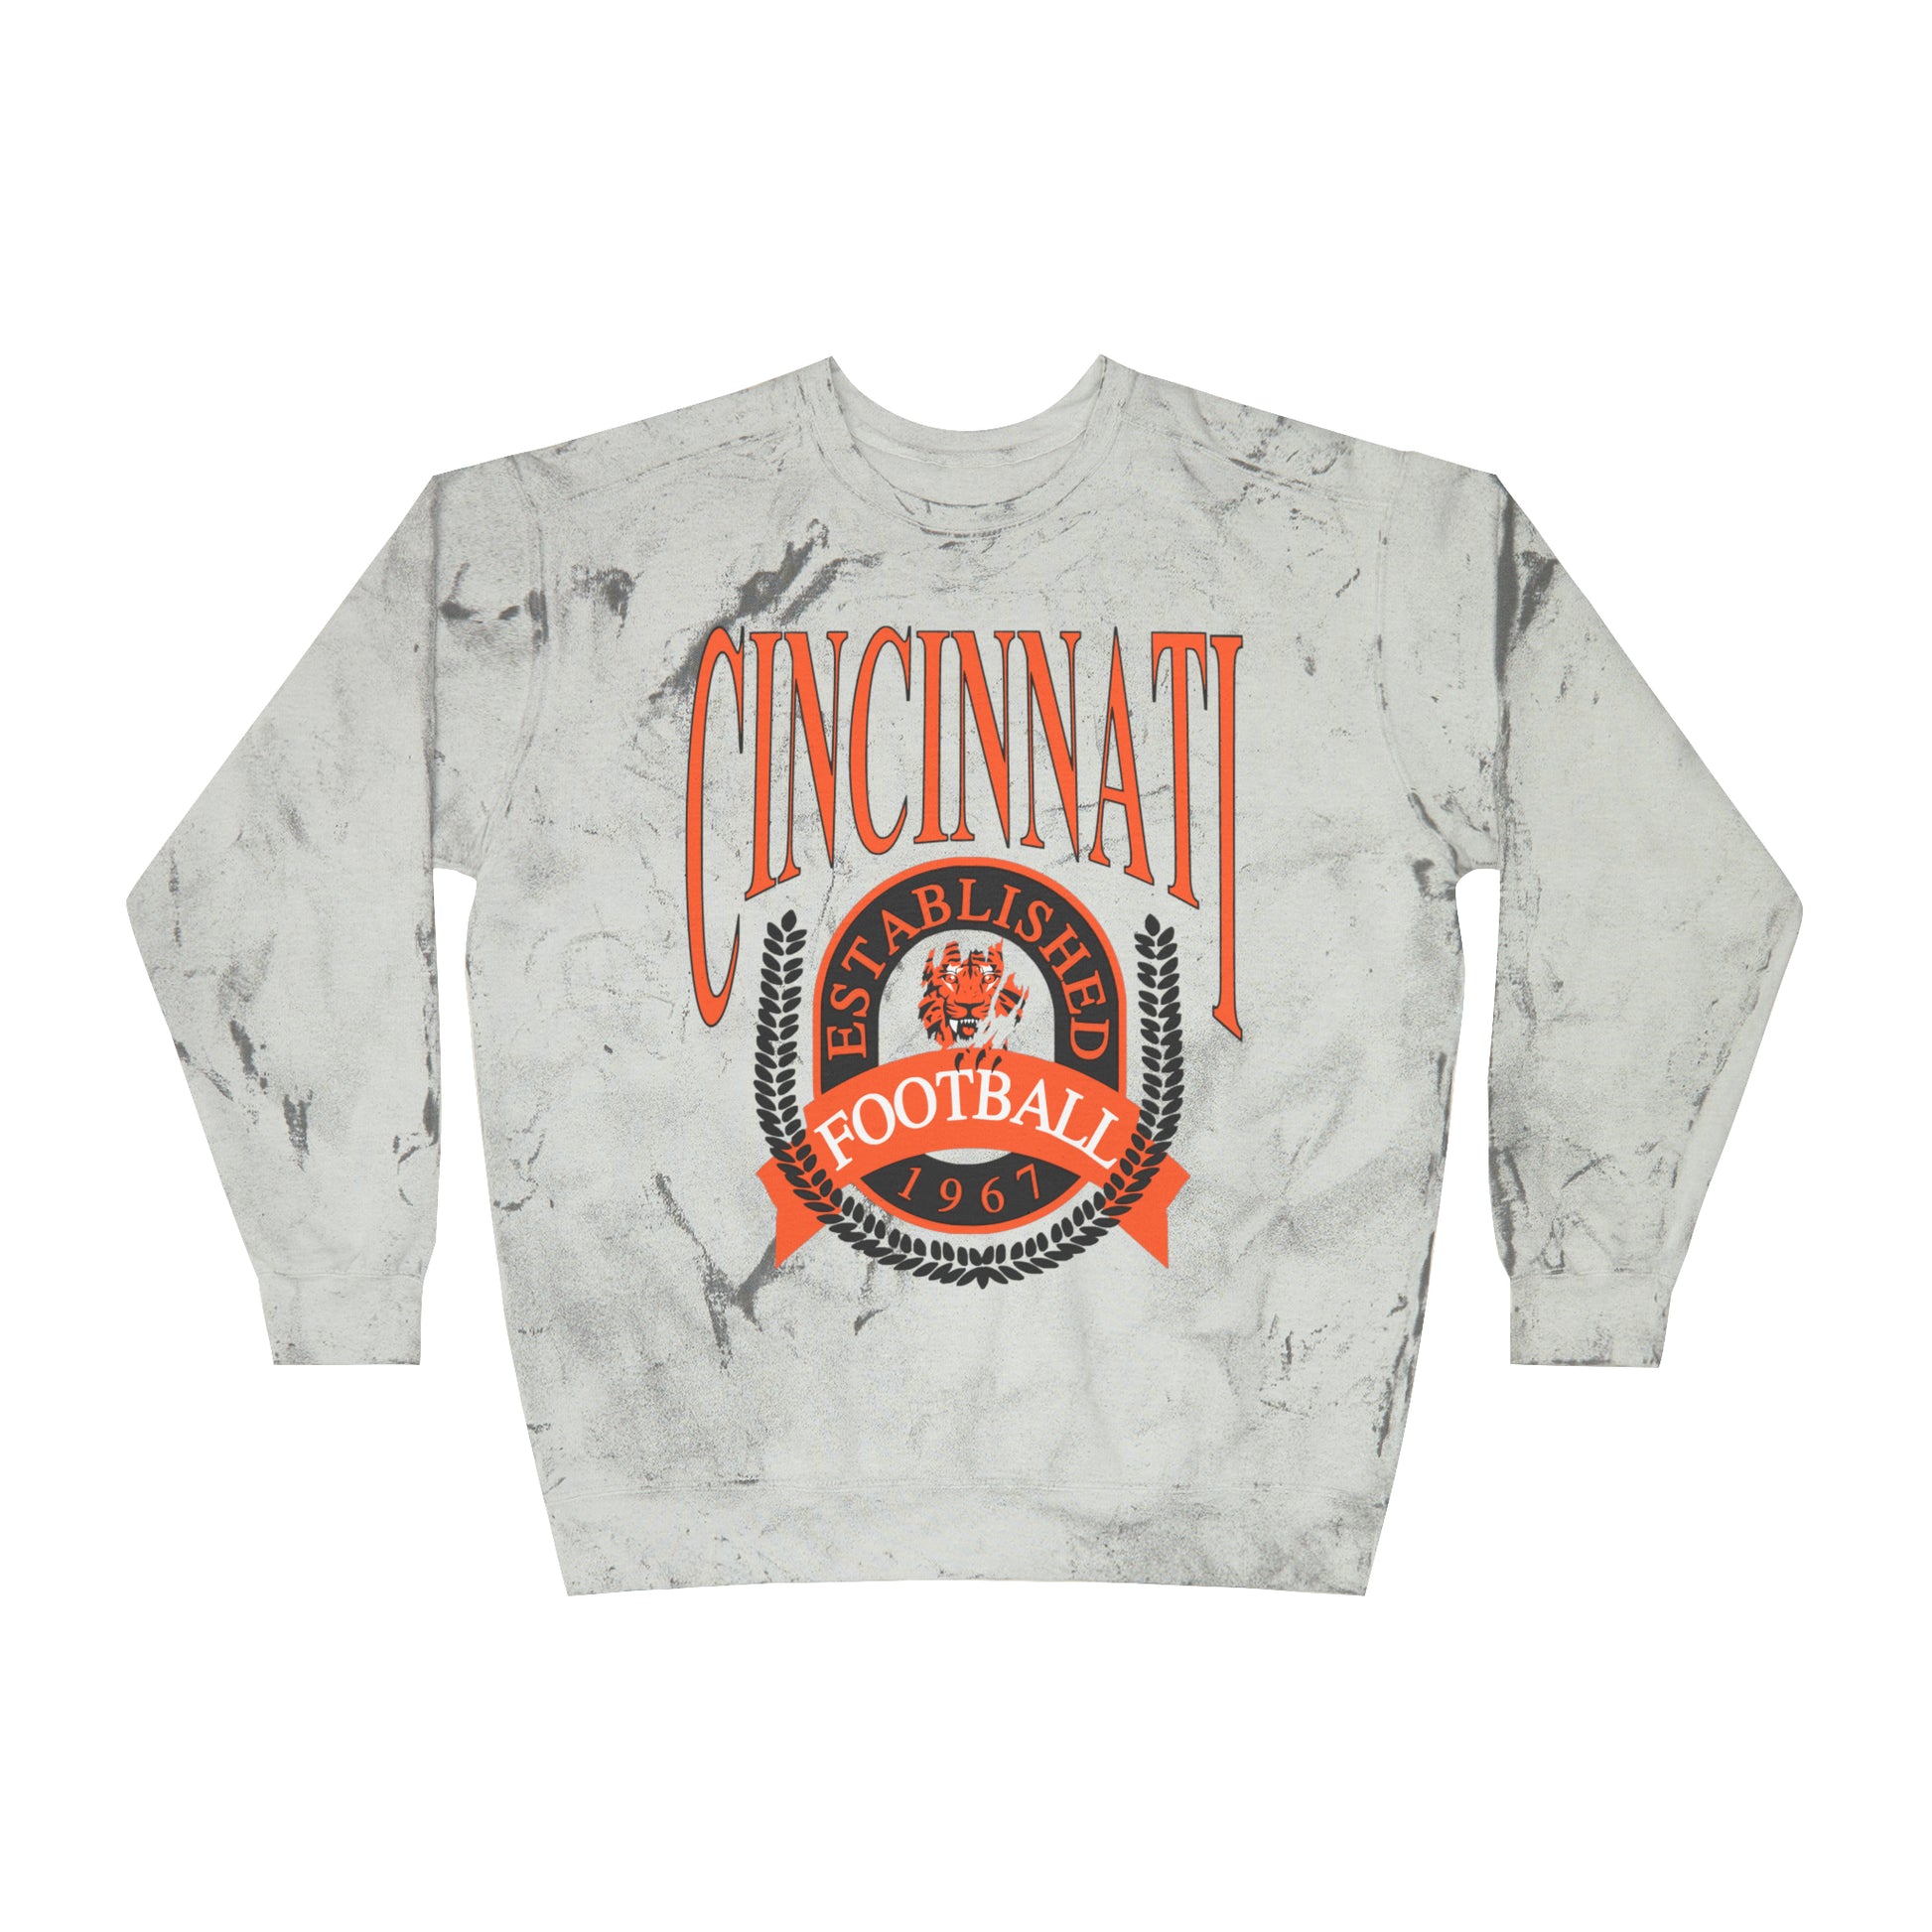 Tie Dye Cincinnati Bengals Crewneck Sweatshirt - Vintage Hippy NFL Football Hoodie - Men's Women's Oversized Acid Wash Apparel Design 2